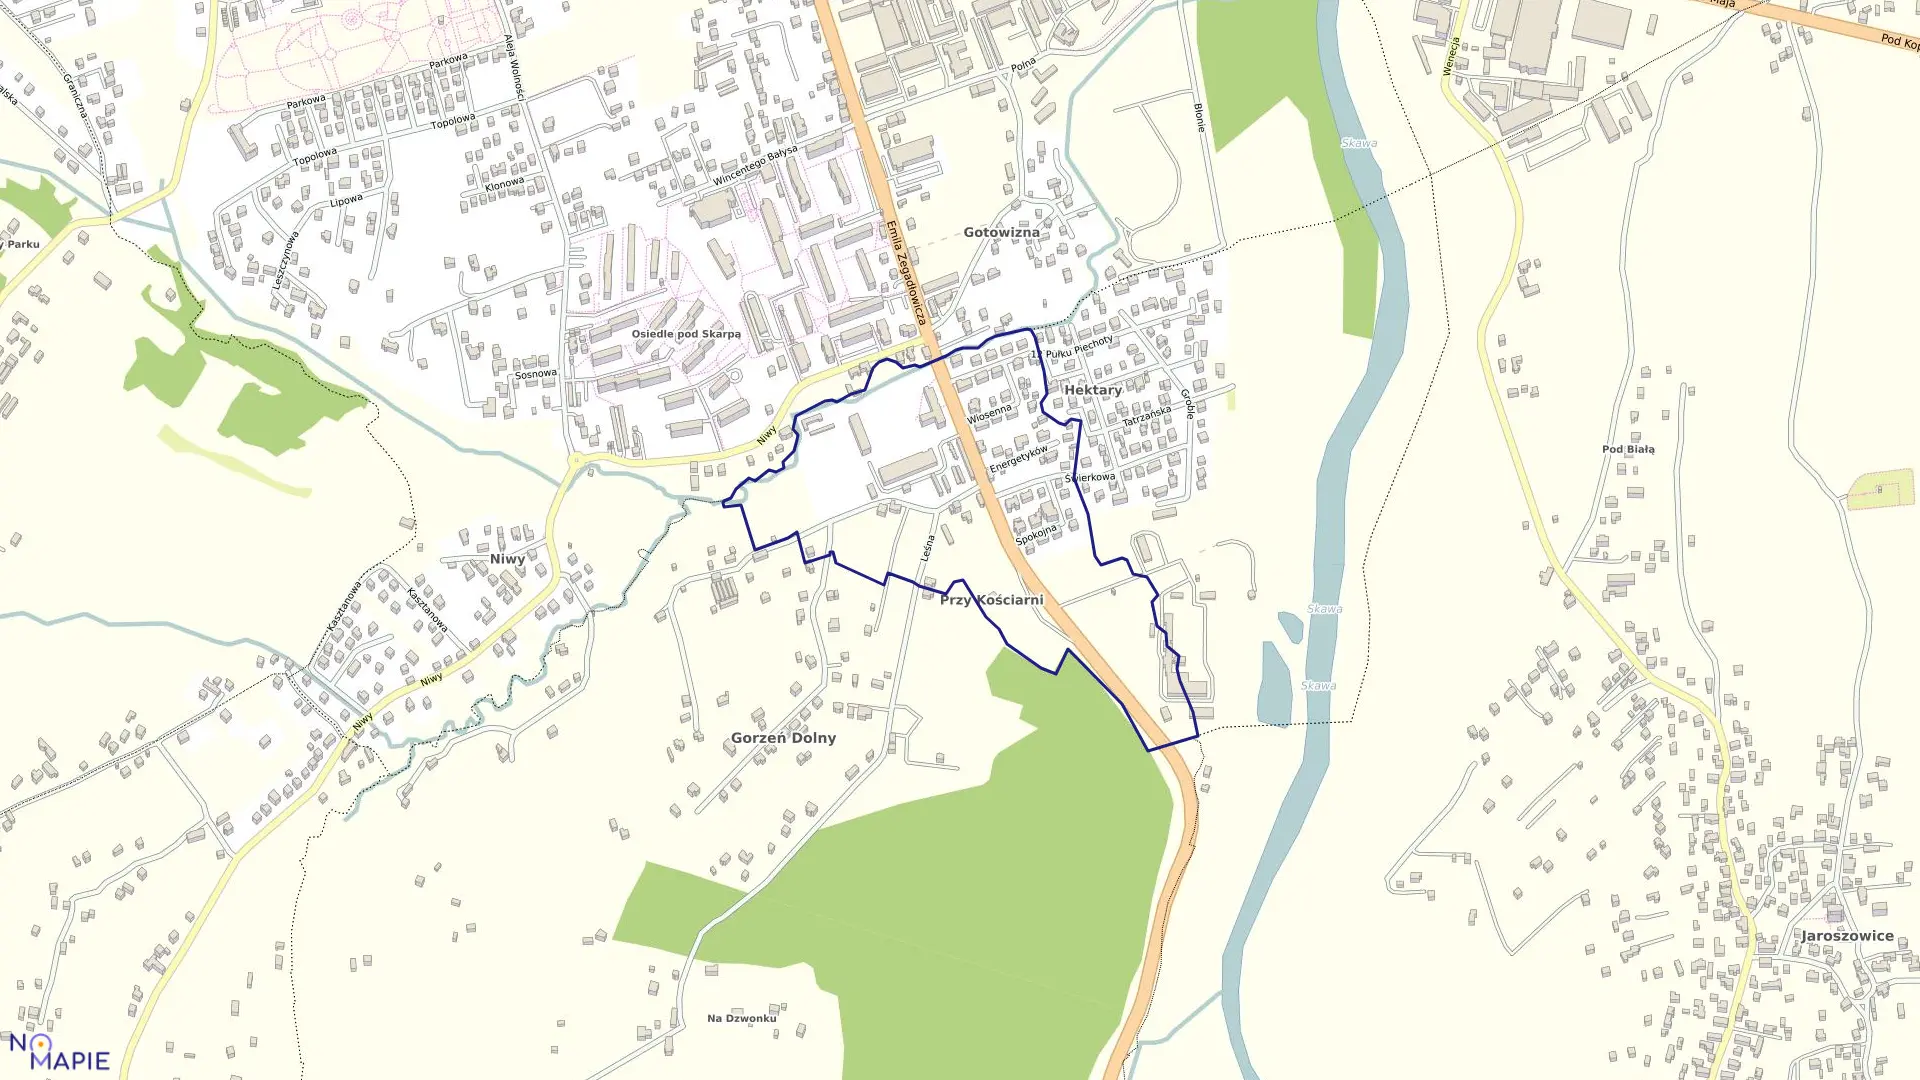 Mapa obrębu WADOWICE-Gorzeń D. w gminie Wadowice